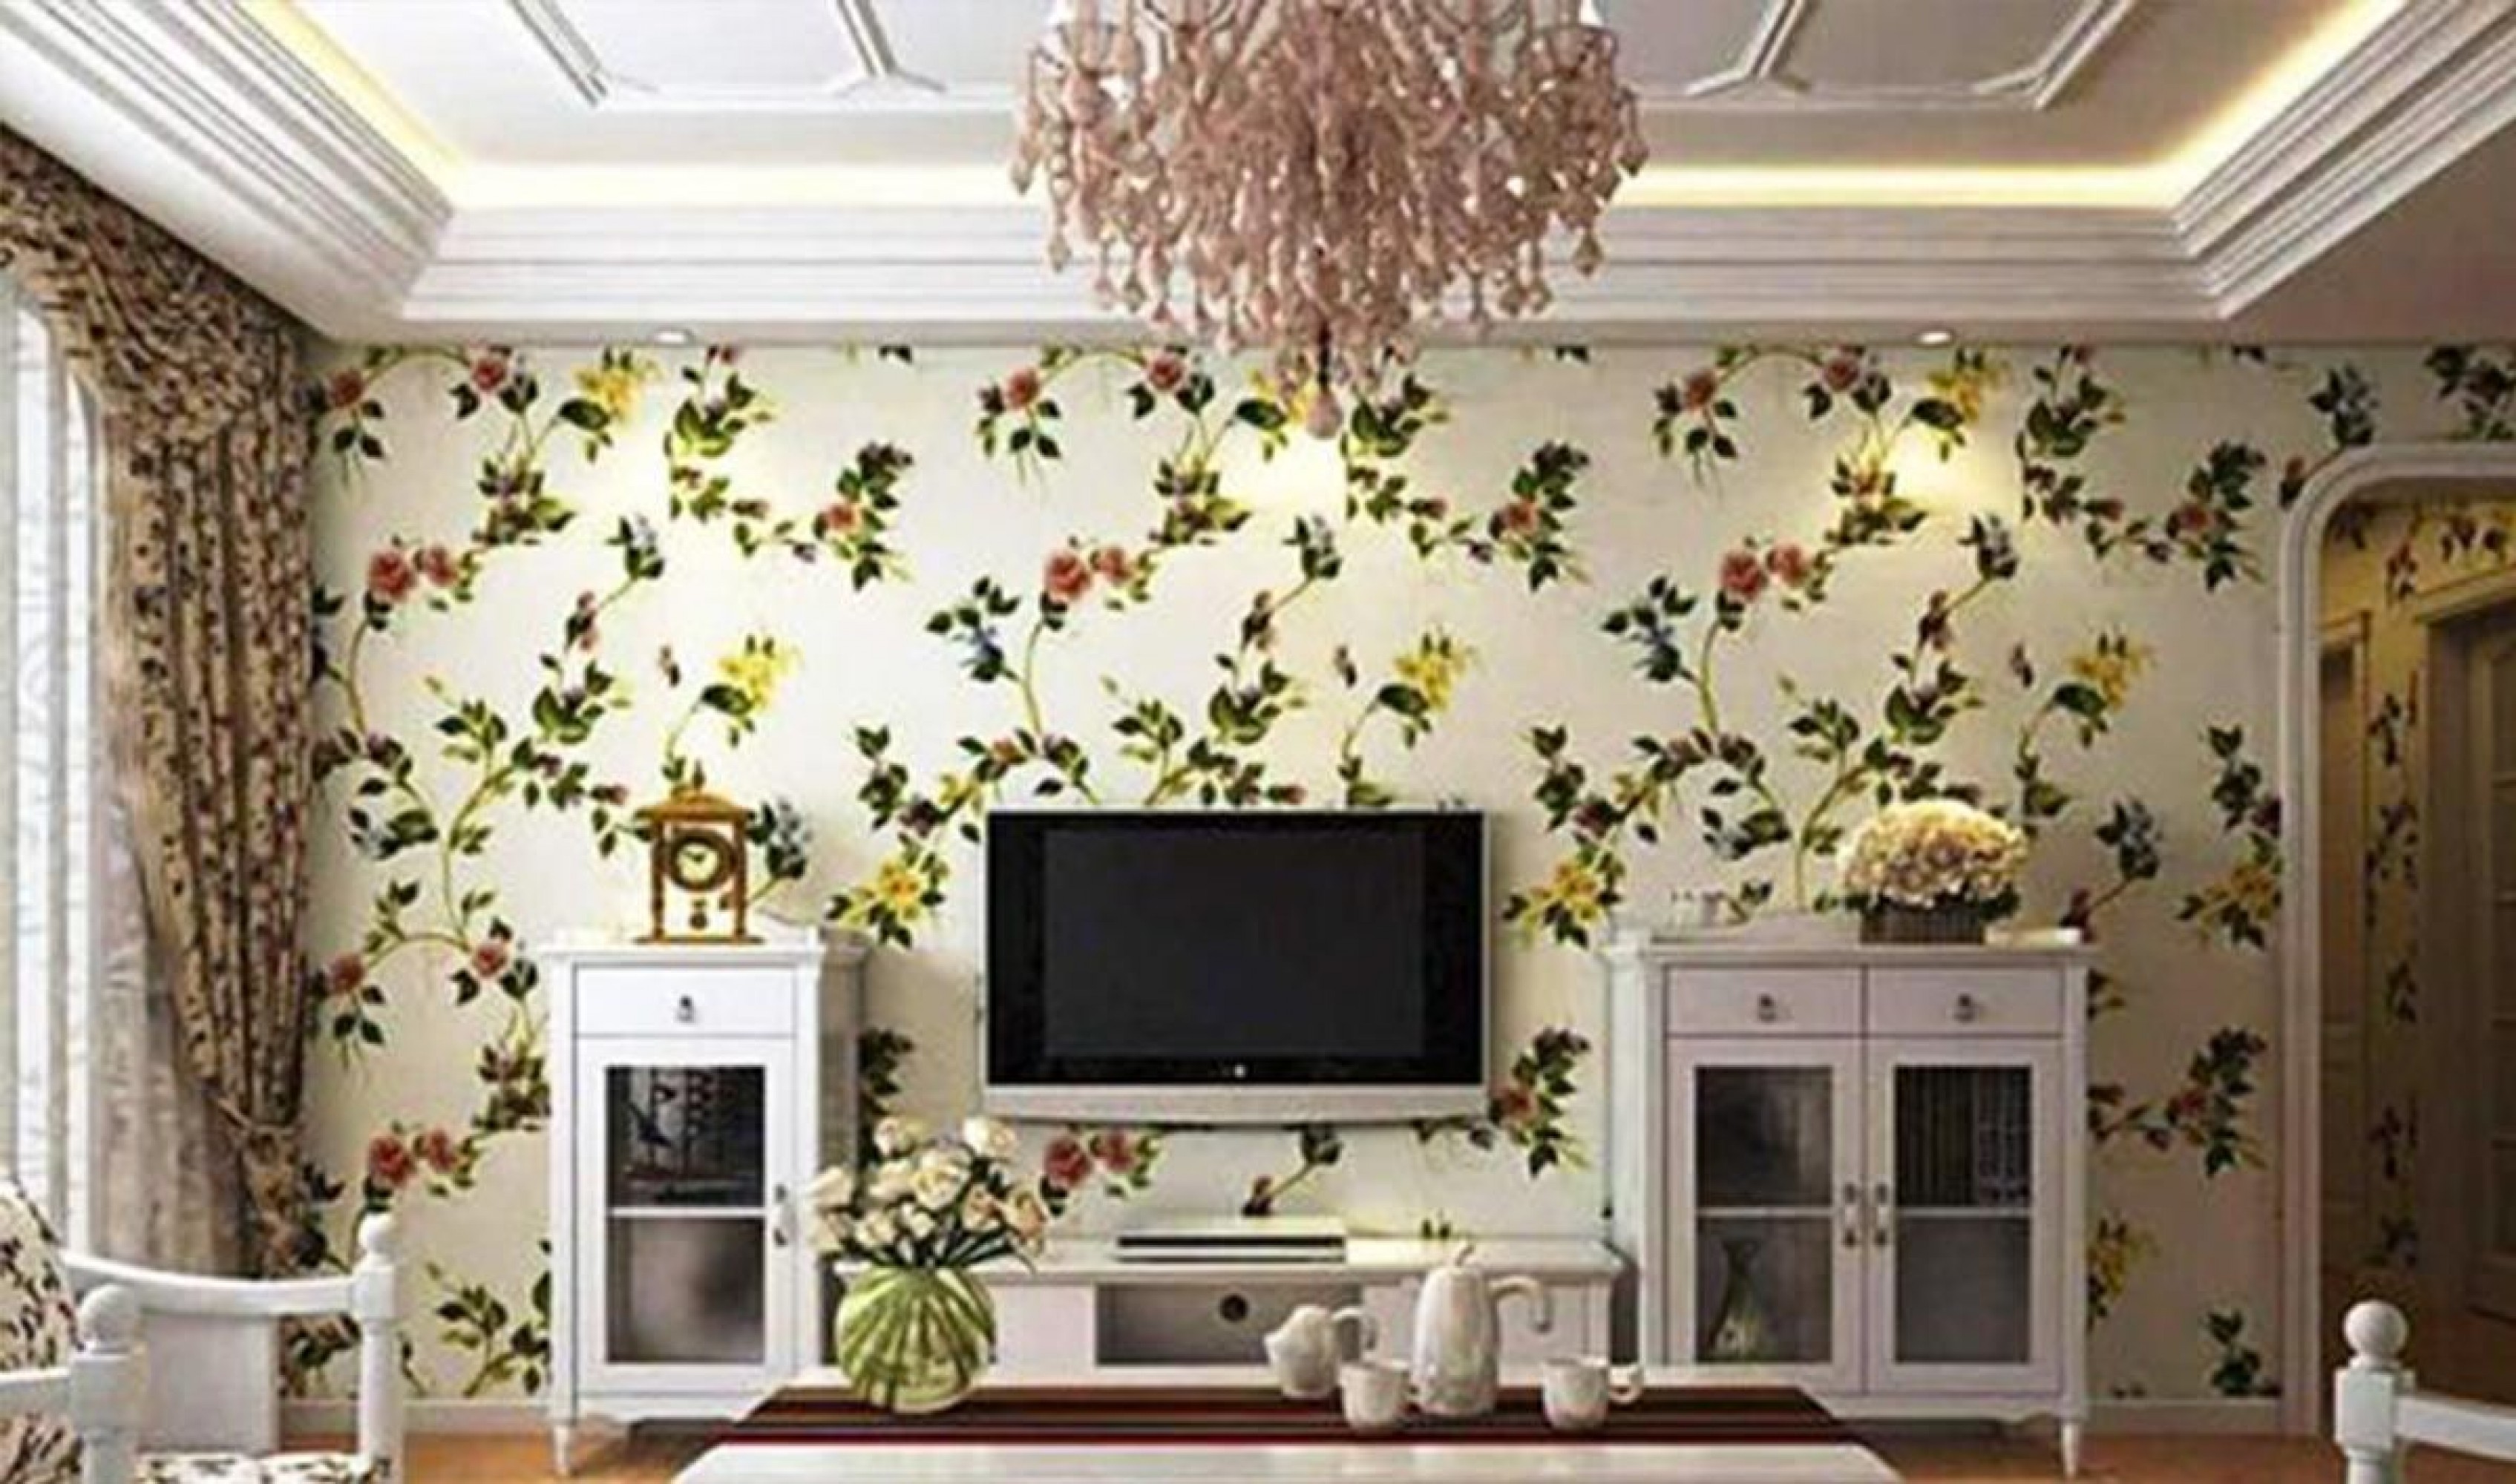 wallpaper dinding,room,living room,interior design,wallpaper,wall